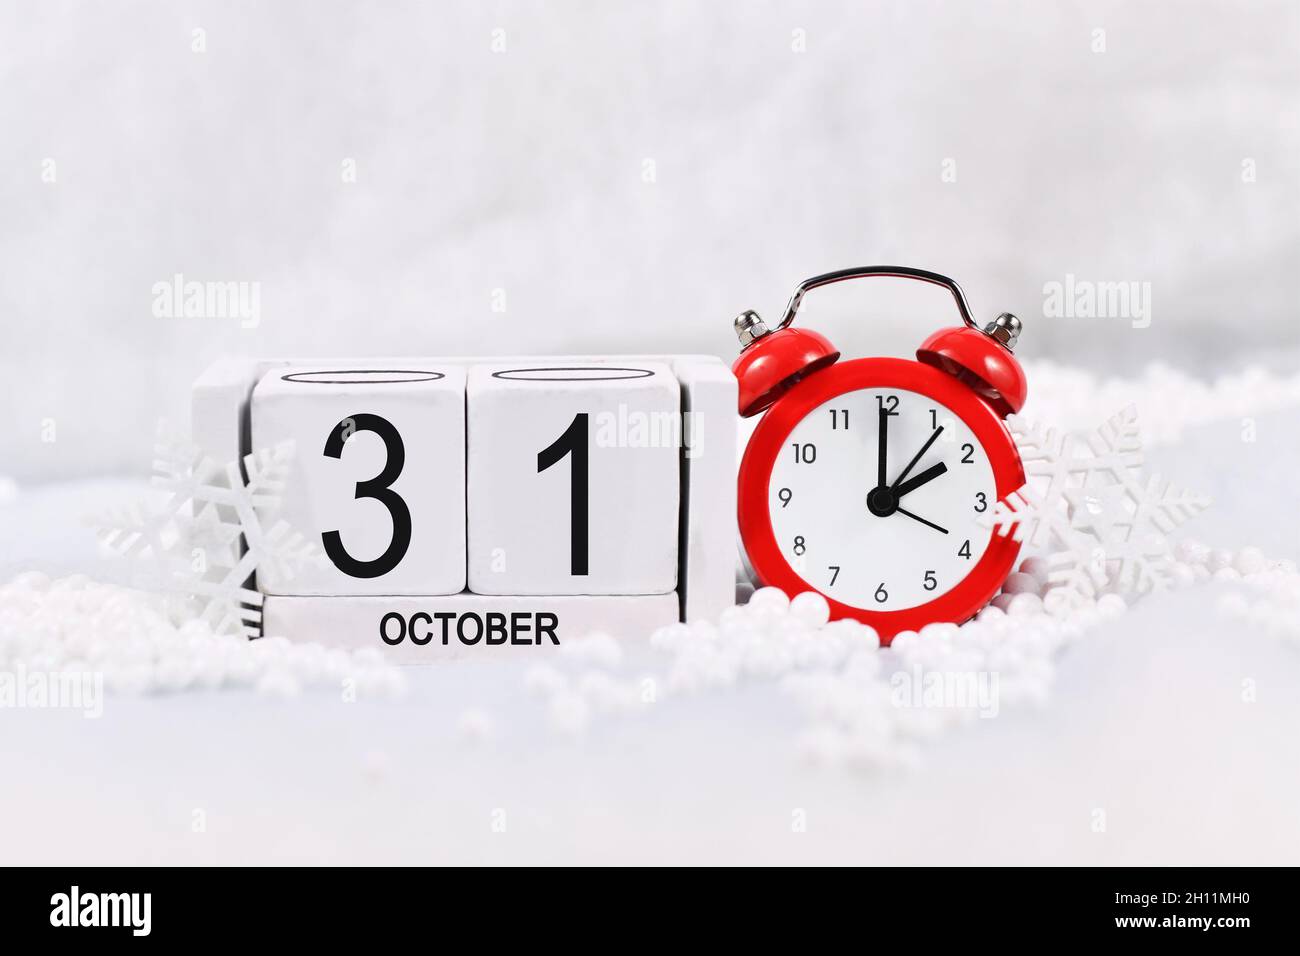 Concept de changement d'heure pour l'heure d'hiver en Europe le 31 octobre avec réveil rouge et calendrier dans la neige Banque D'Images